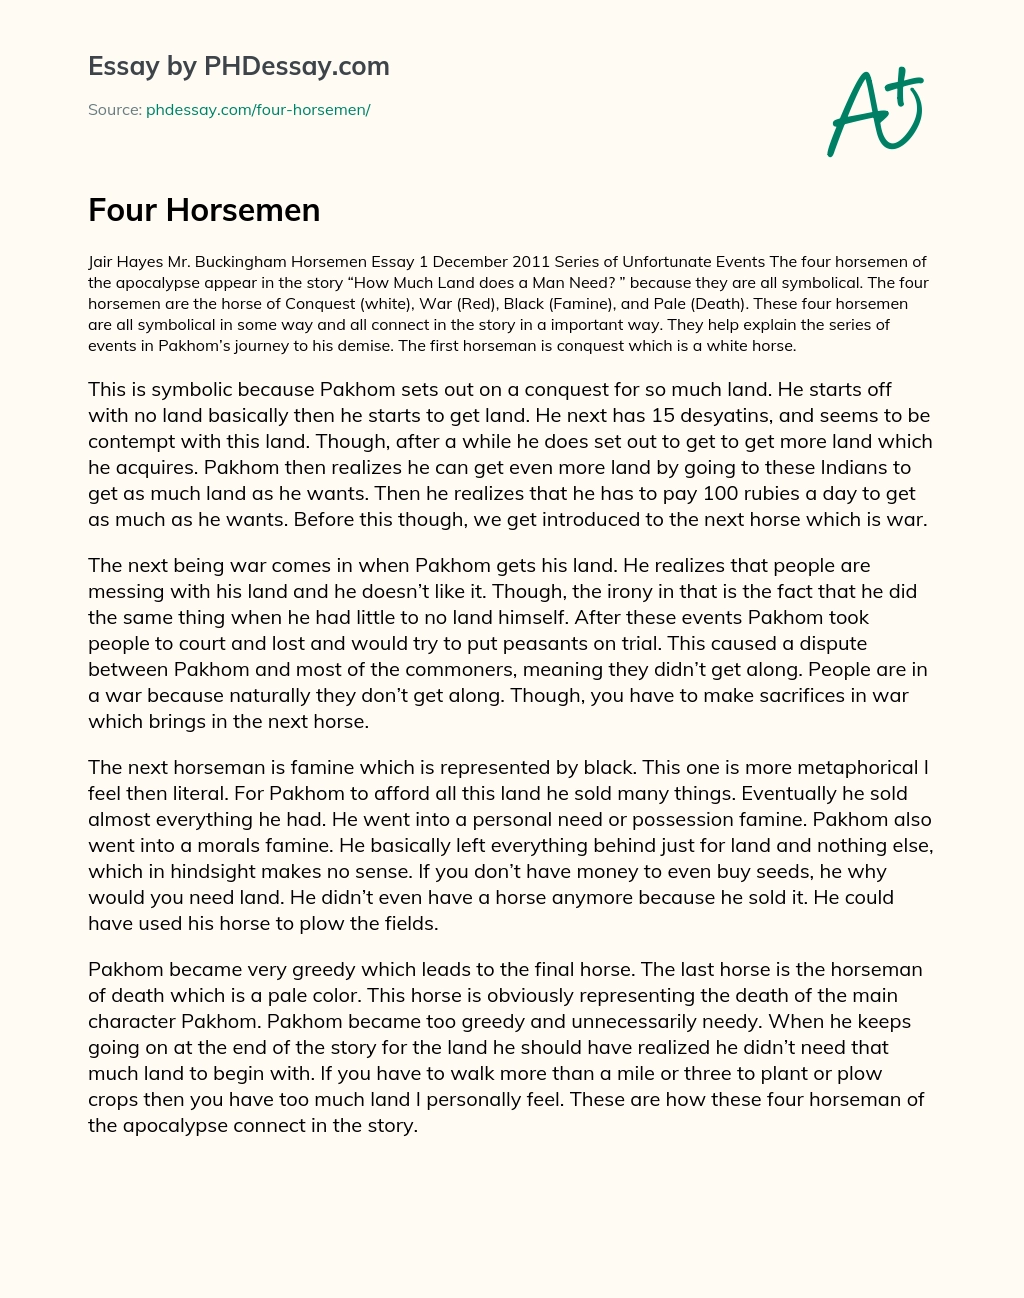 Four Horsemen essay